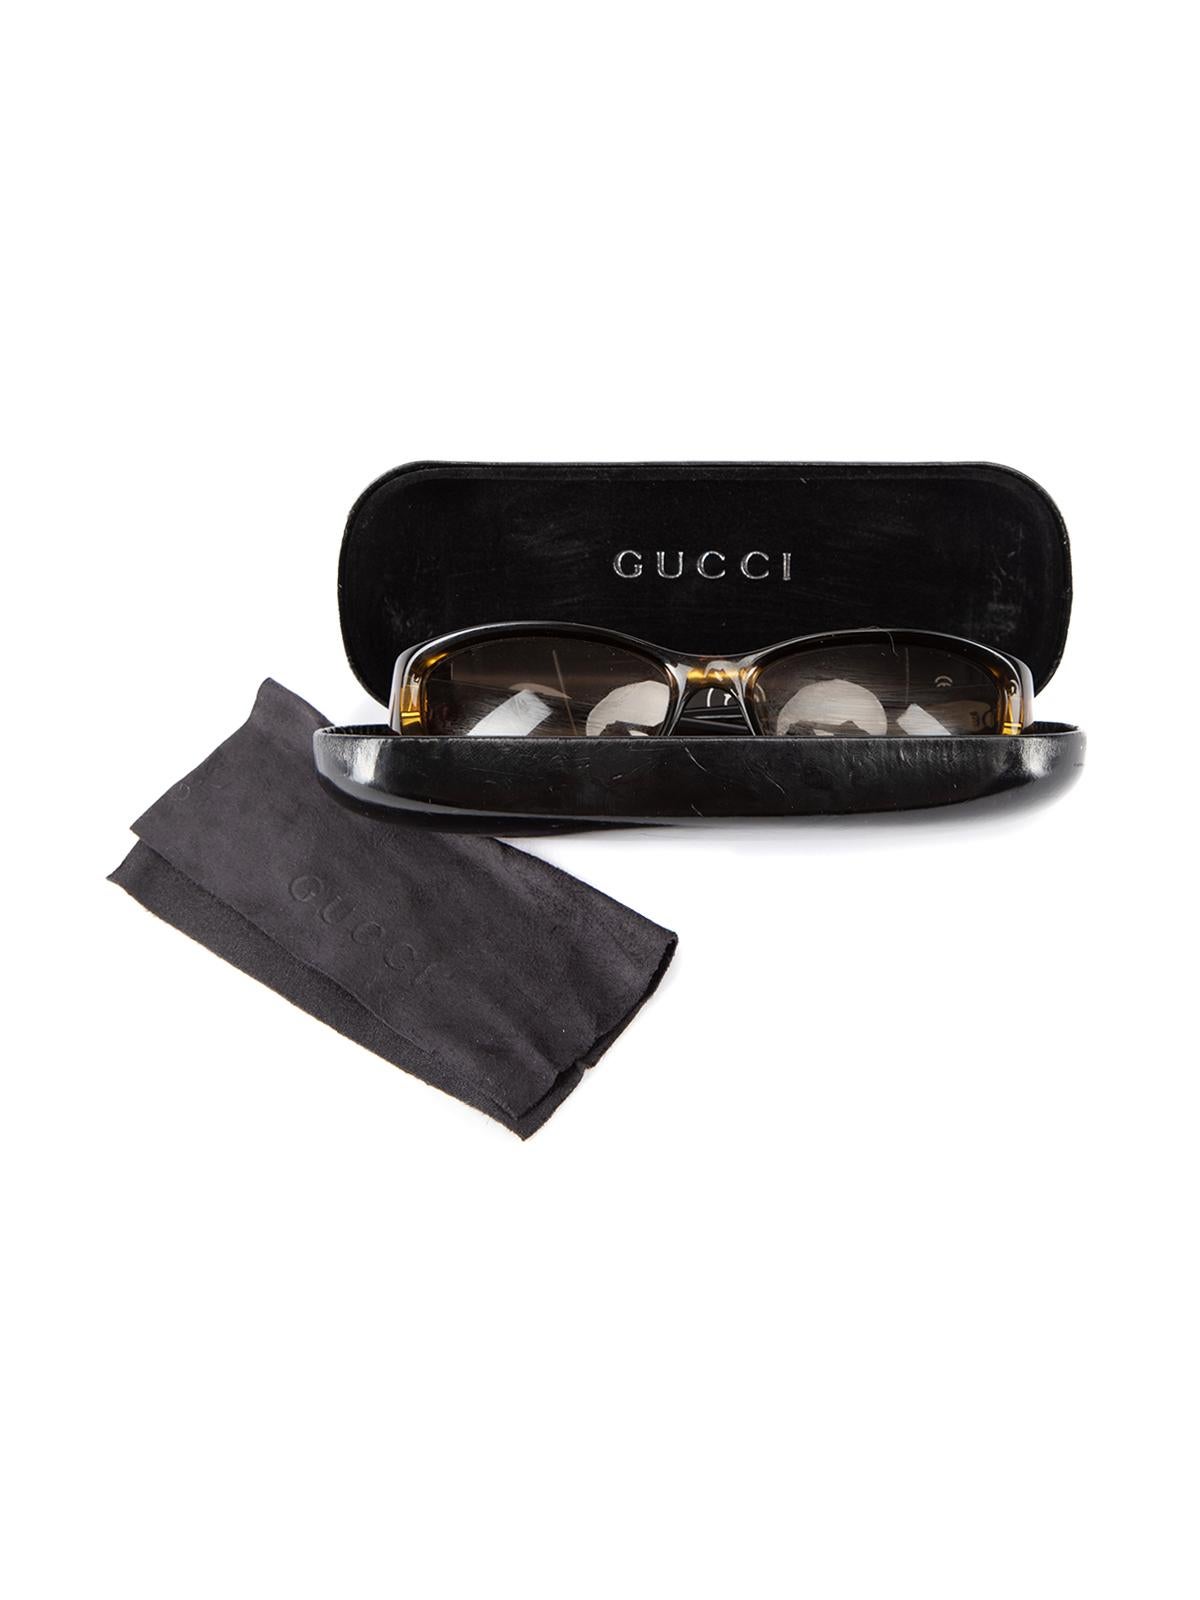 Pre-Loved Gucci Women's Rectangular Framed Sunglasses 7